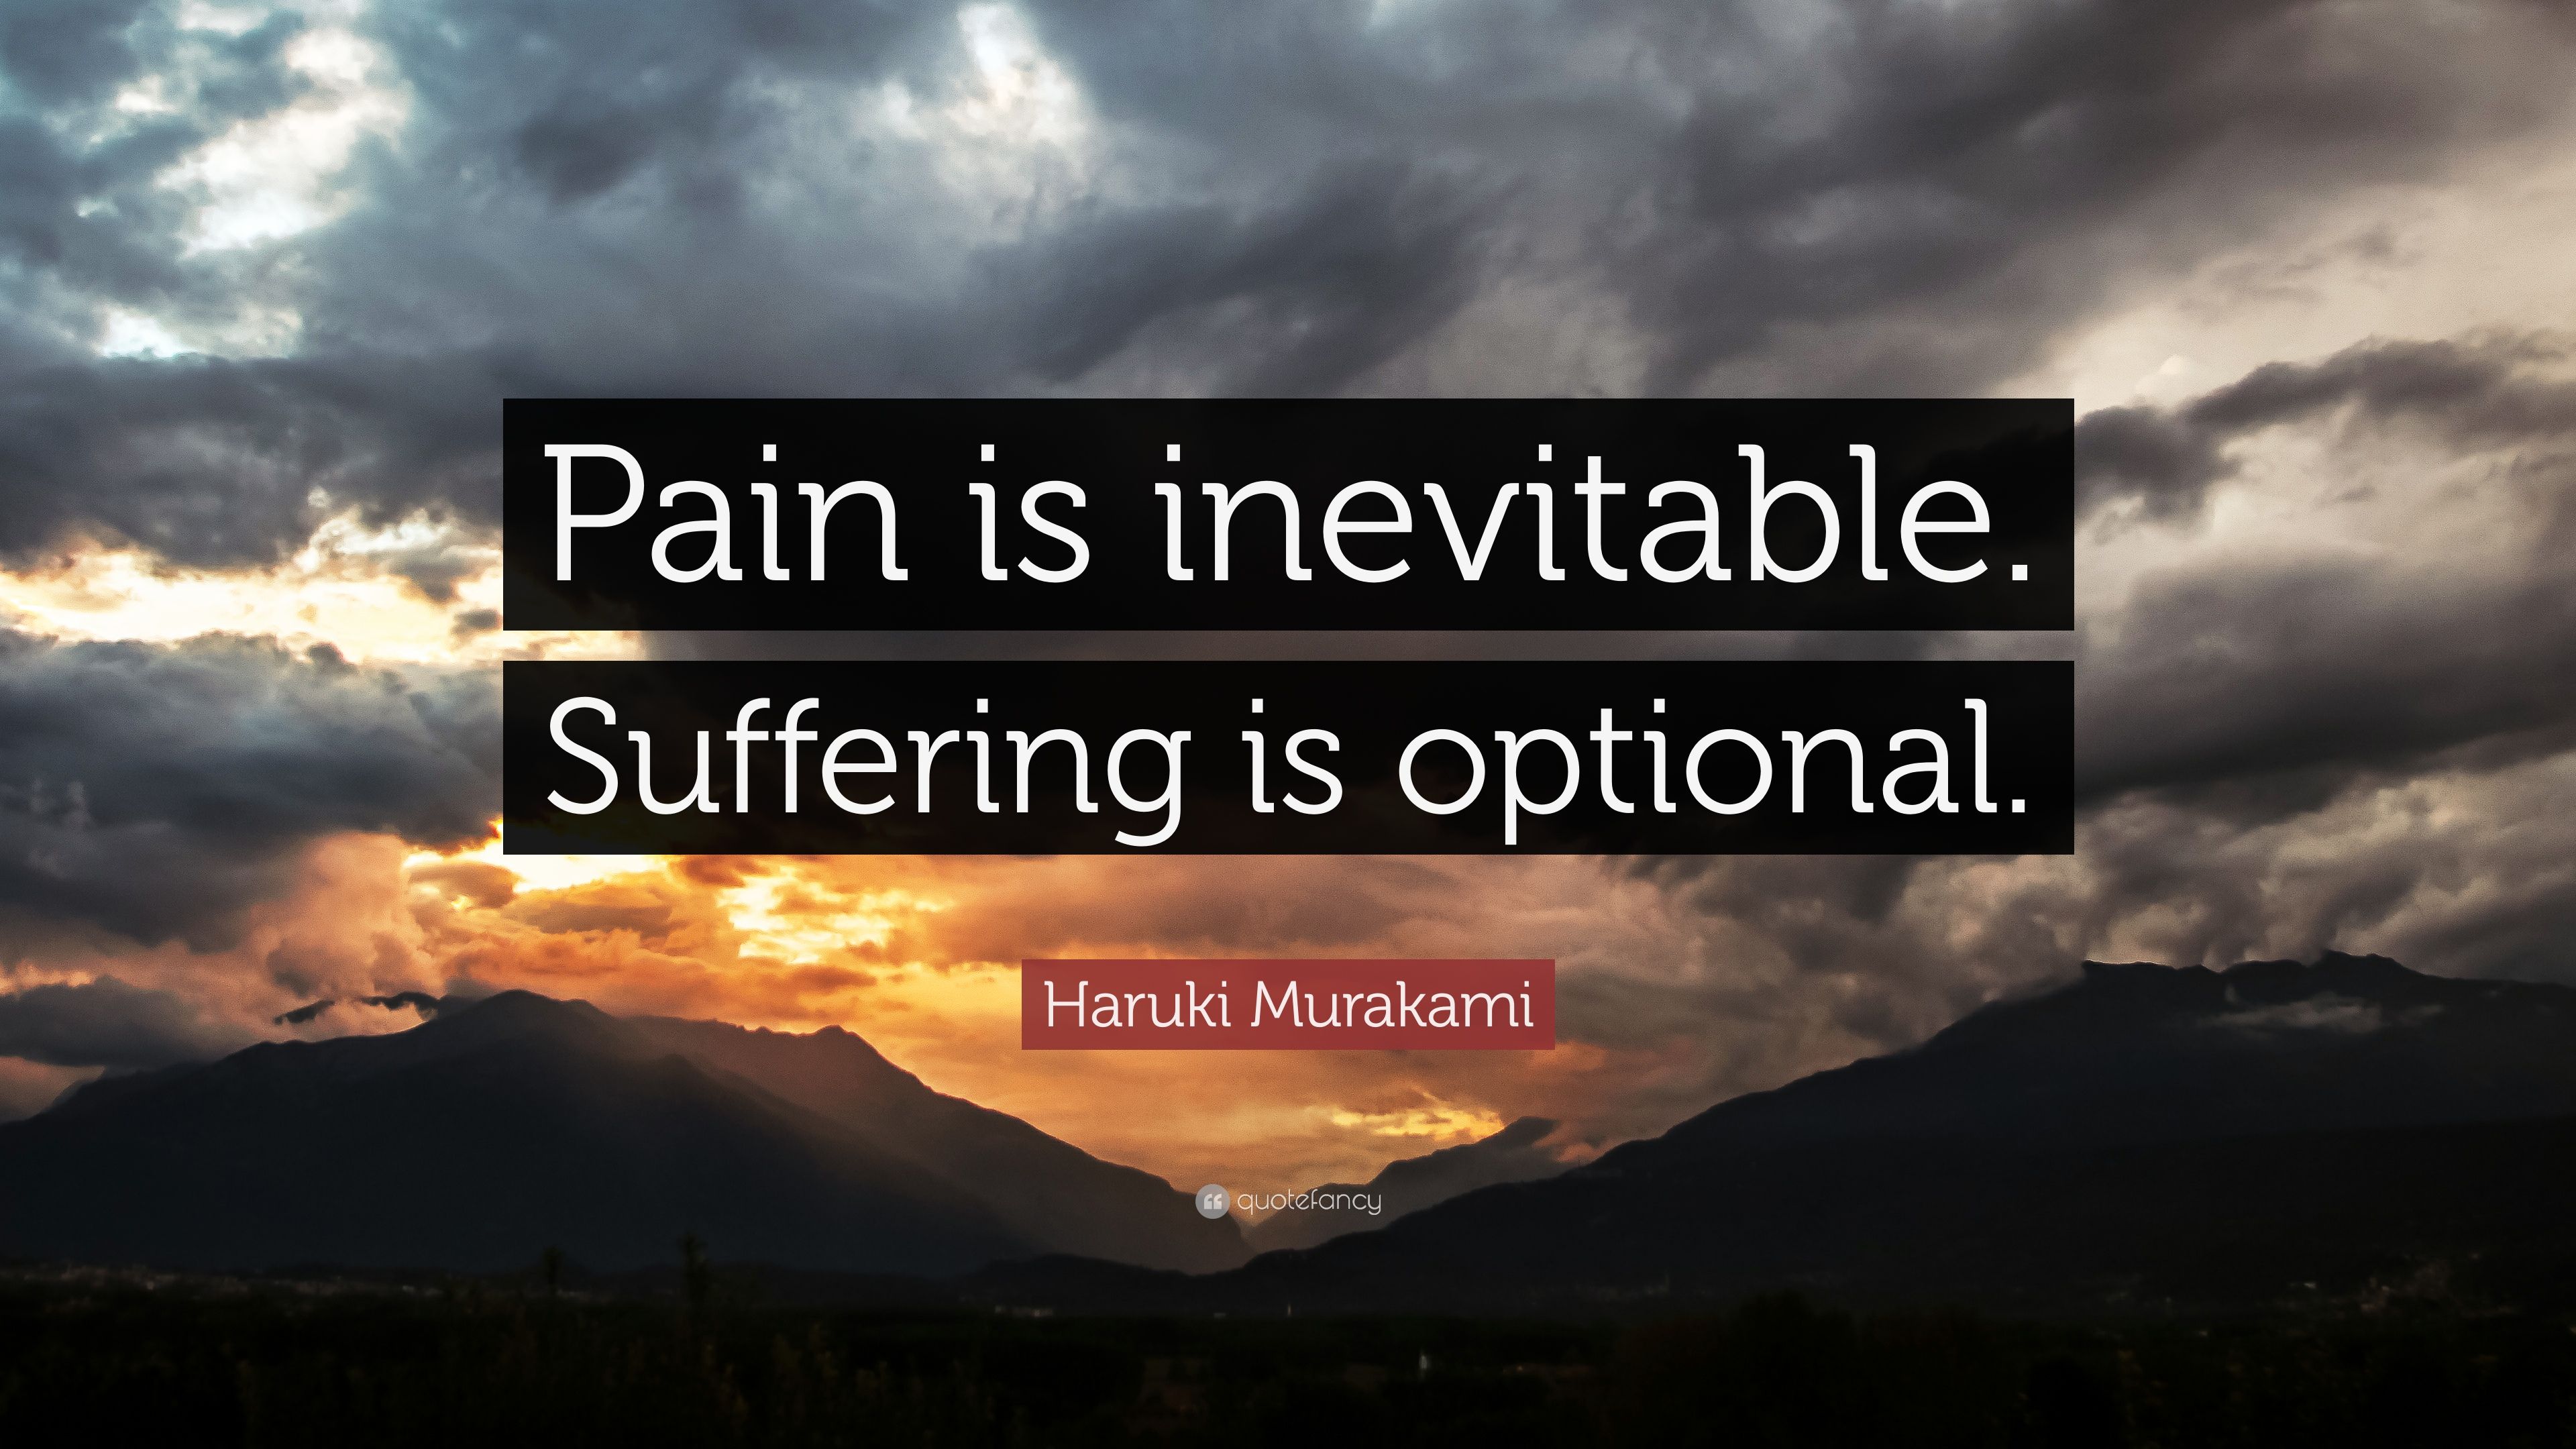 Haruki Murakami Quote: “Pain is inevitable. Suffering is optional